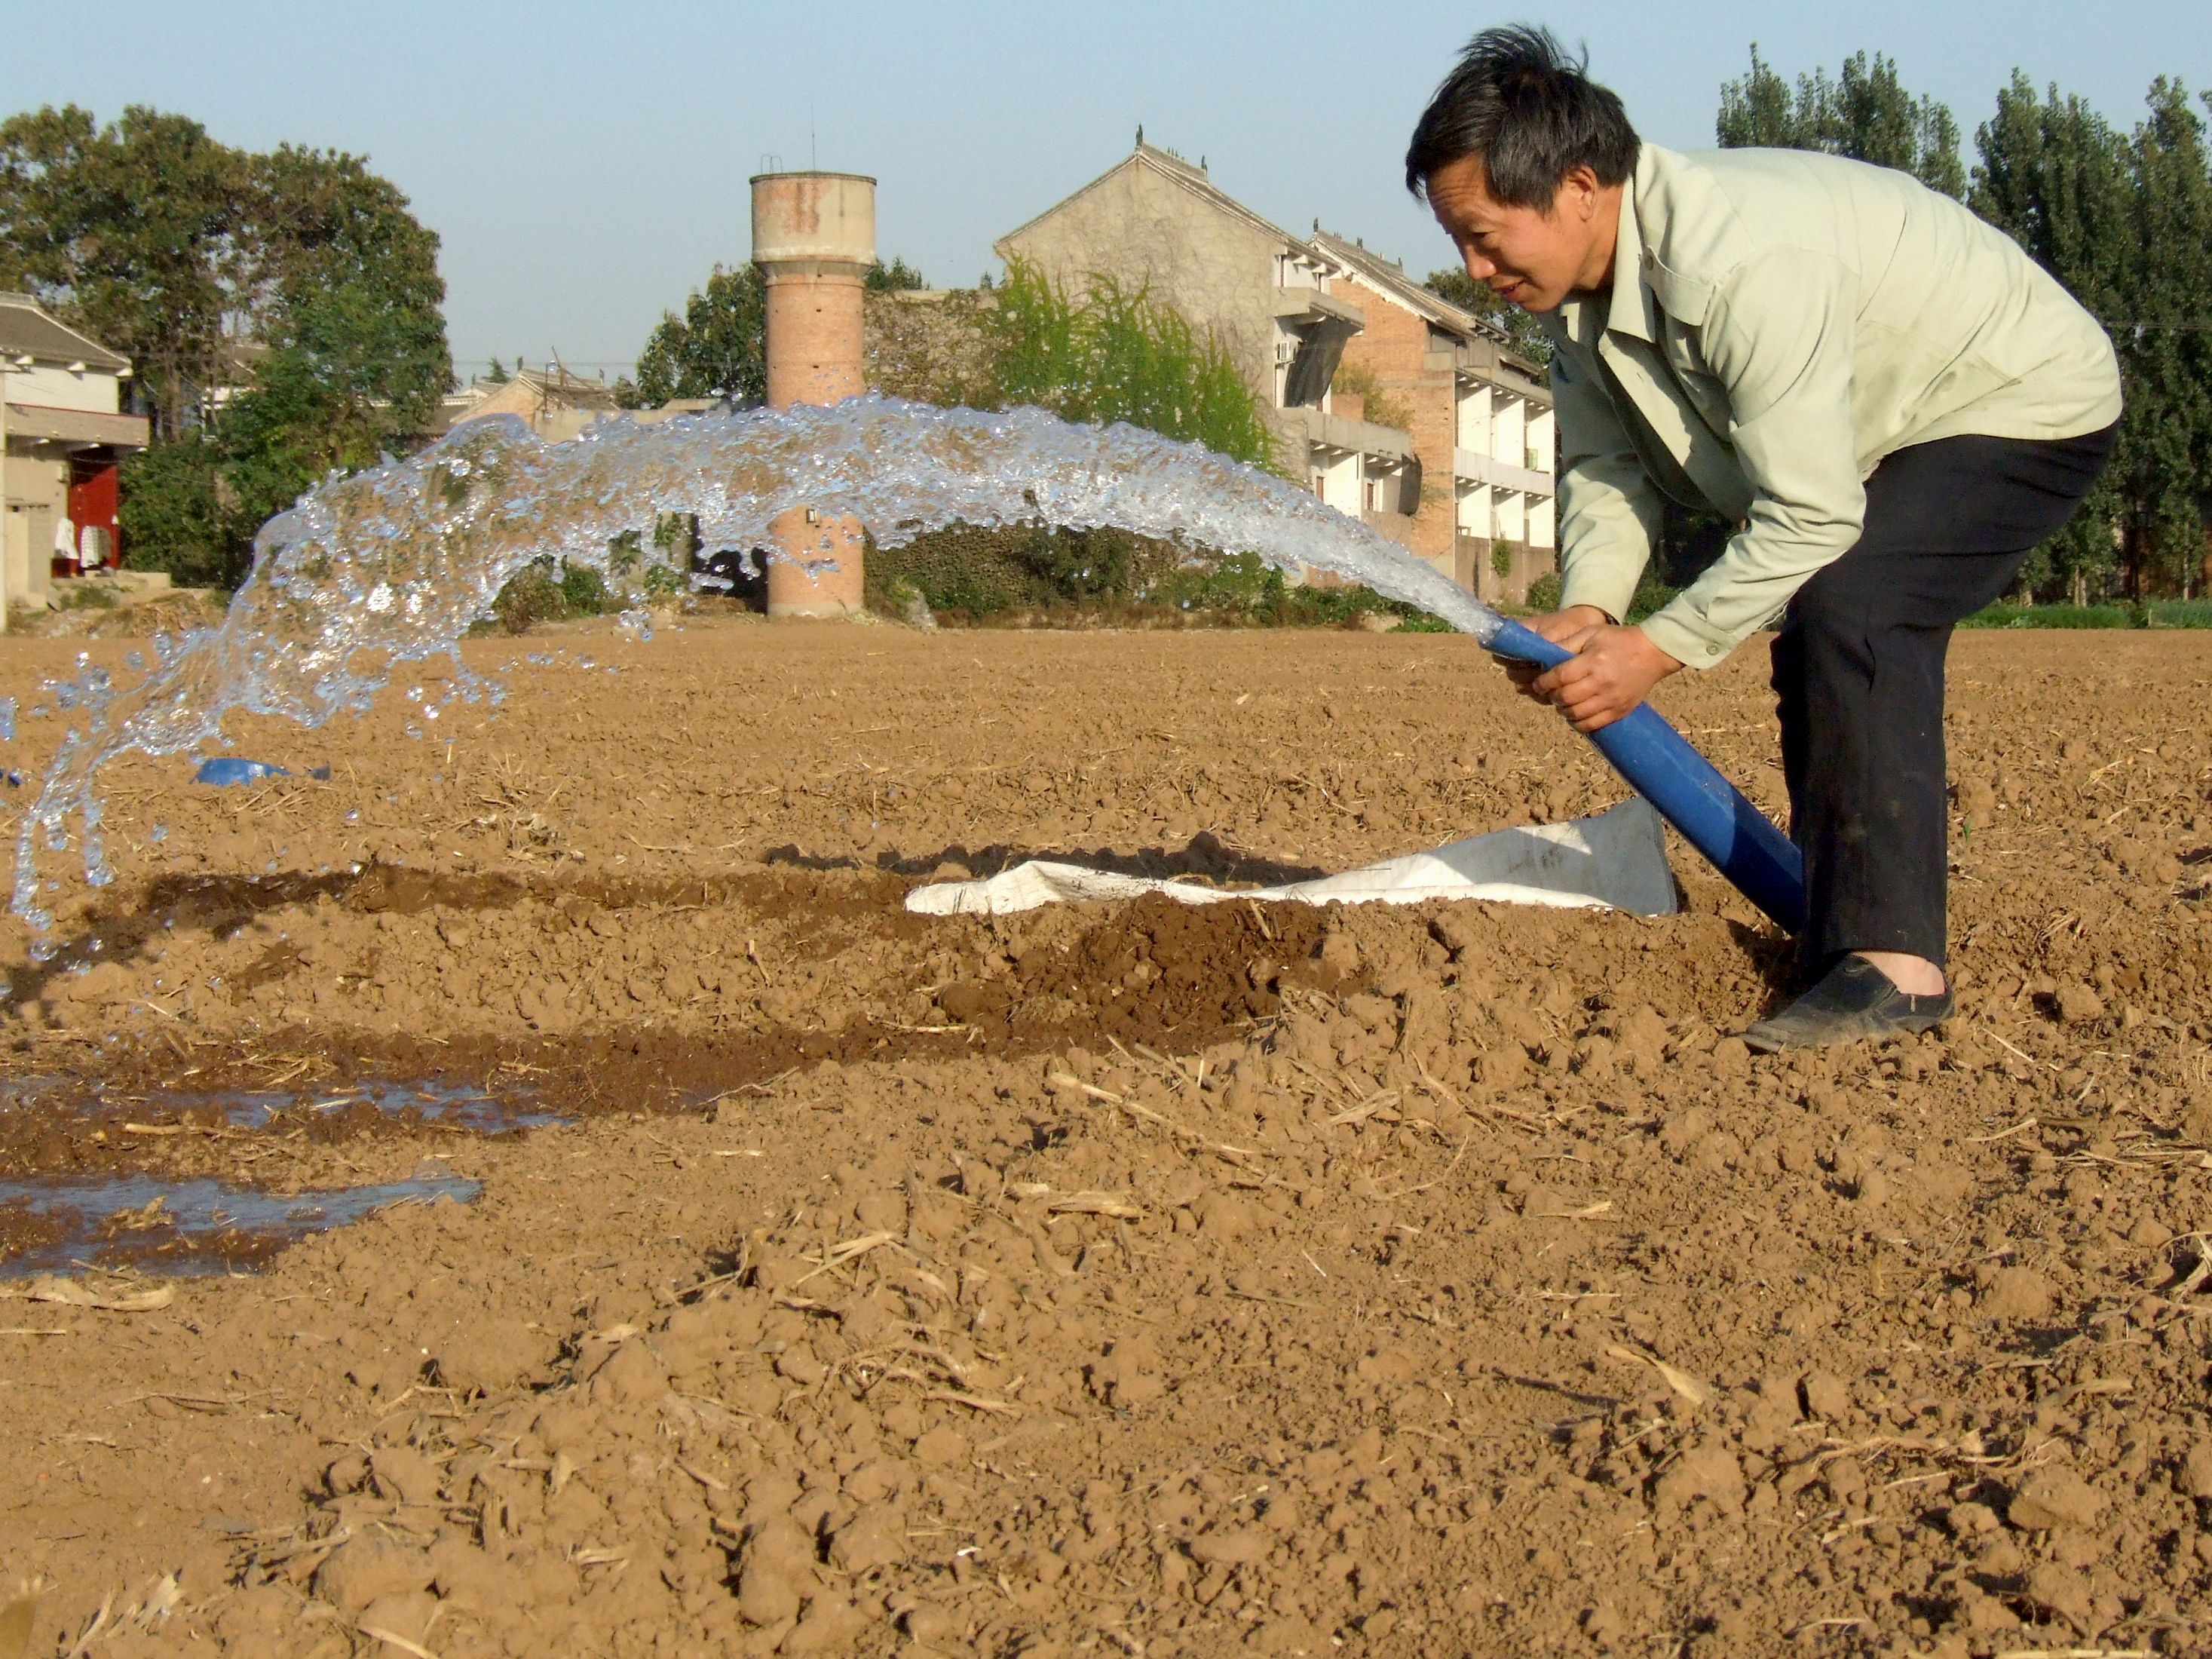 (图片)孟州:农民浇灌小麦蒙头水